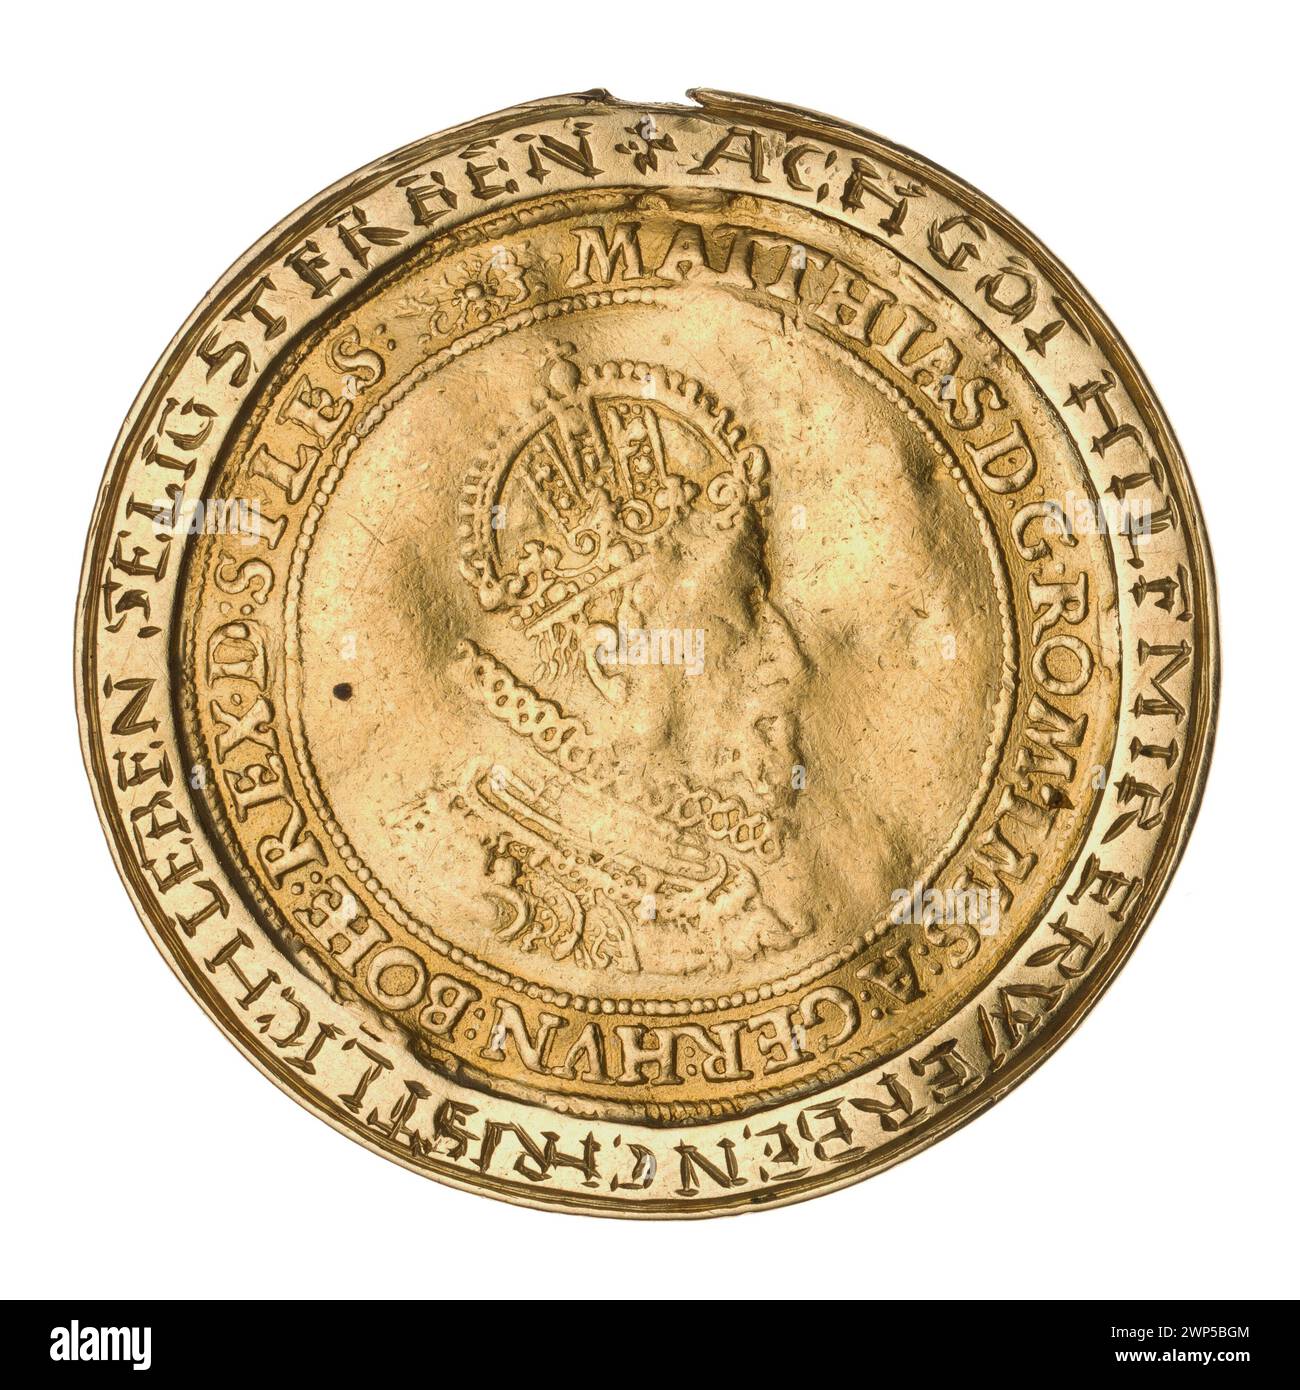 2 ducati (moneta nella cornice); Maciej II Asburgo (imperatore romano-tedesco; 1557-1619); 1613 (moneta) (1613-00-00-1613-00-00); Asburgo (famiglia), Maciej II (imperatore romano-tedesco-1557-1619), Maciej II (imperatore romano-tedesco-1557-1619)-iconografia, ordine della Runa d'oro, Wrocław (stemma), scudo municipale delle Erbe, monete in codice, Cocofanetto, monete in codice in codice in codice. busto da uomo, busto maschile in crisi, busto da uomo in armatura, ritratto maschile a destra, ritratti, ritratti dei governanti, scudo a quattro piste con campo cardiaco, stemma, scudi, scudi Foto Stock